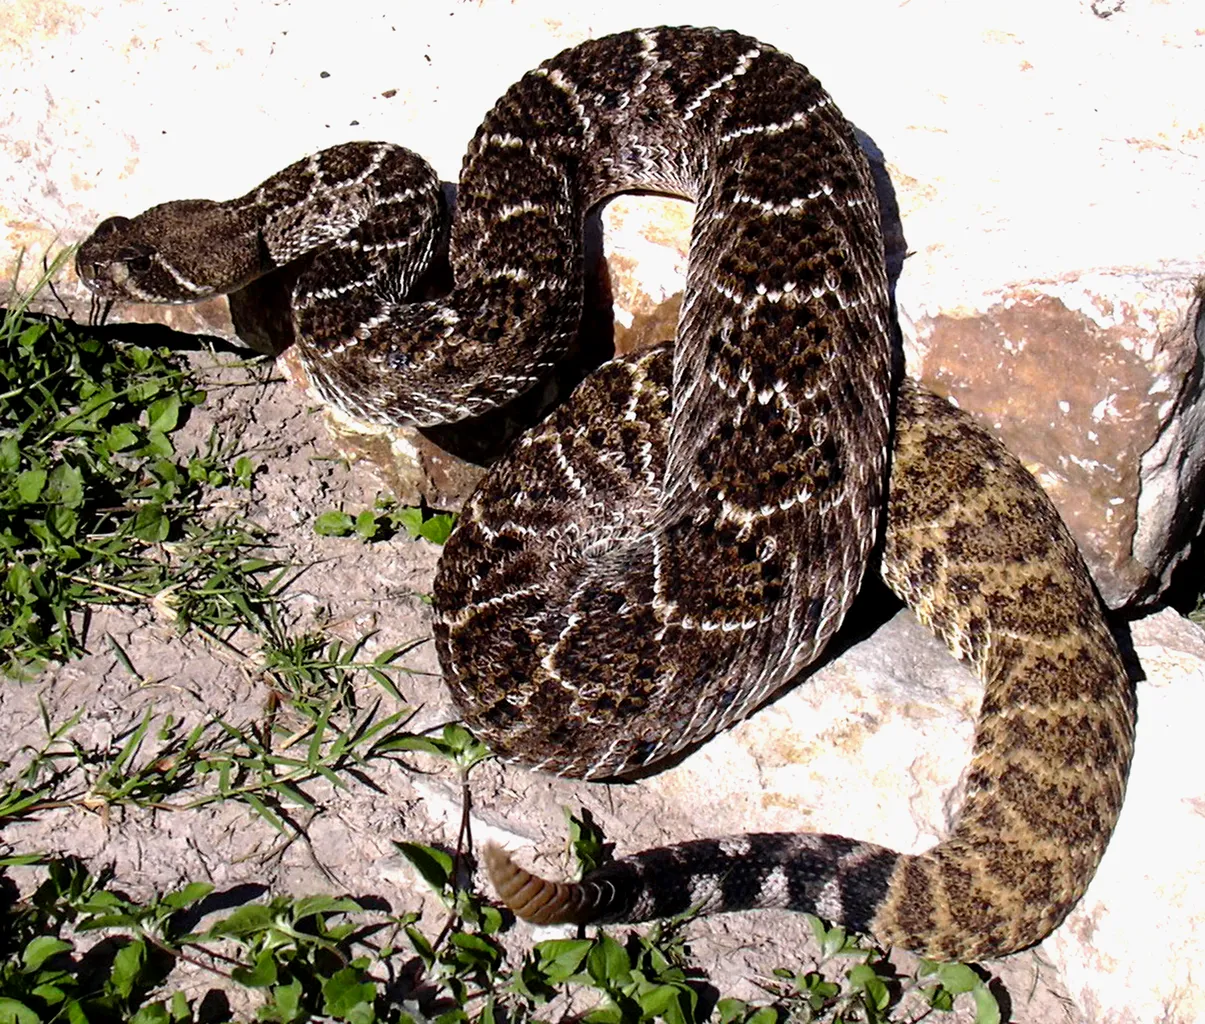 gopher snake vs rattlesnake